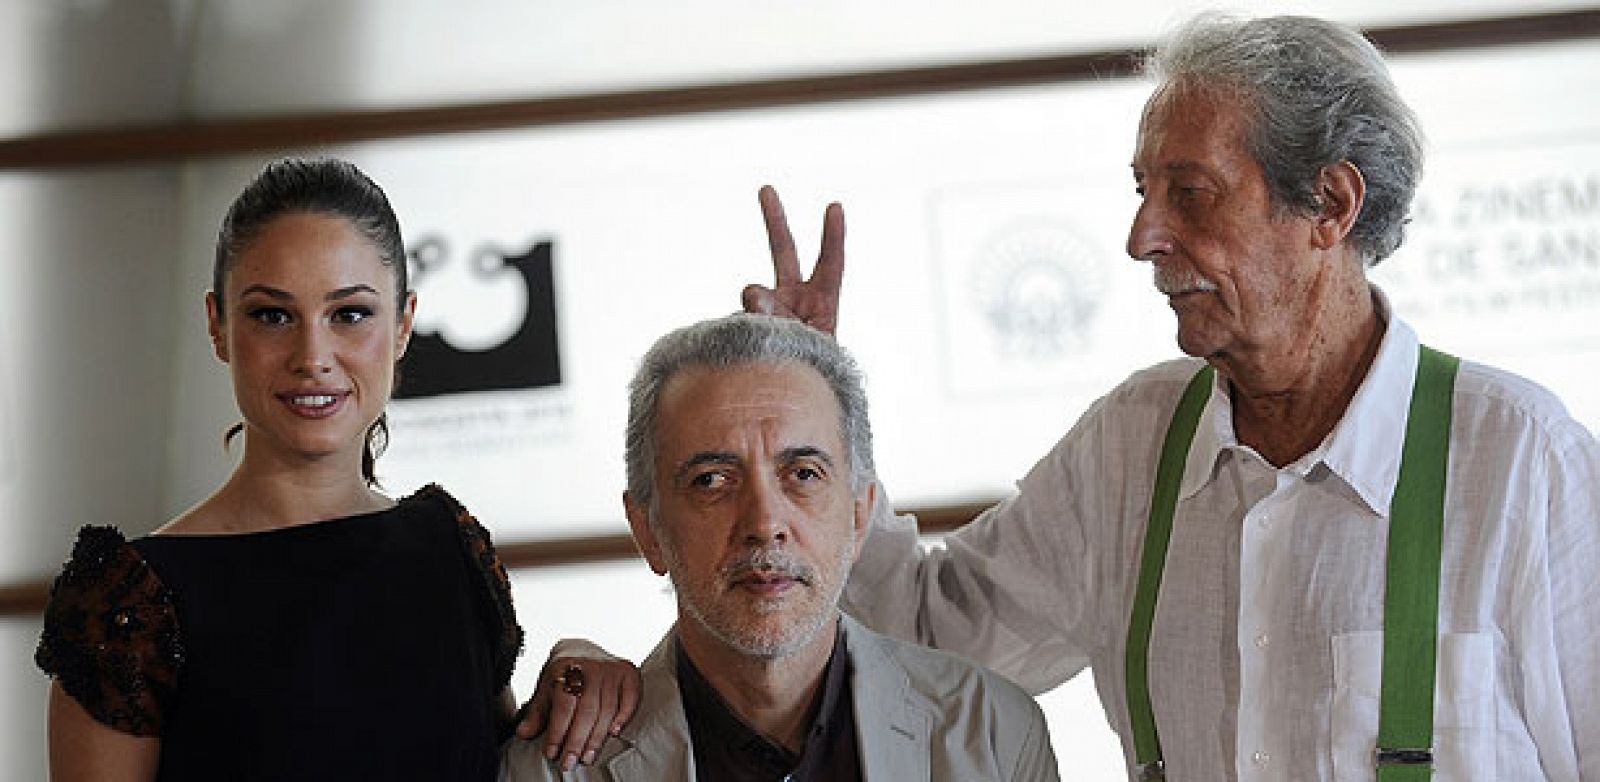 Aida Folch, Fernando Trueba y Jean Rochefort han presentado 'El artista y la modelo' en San Sebastián